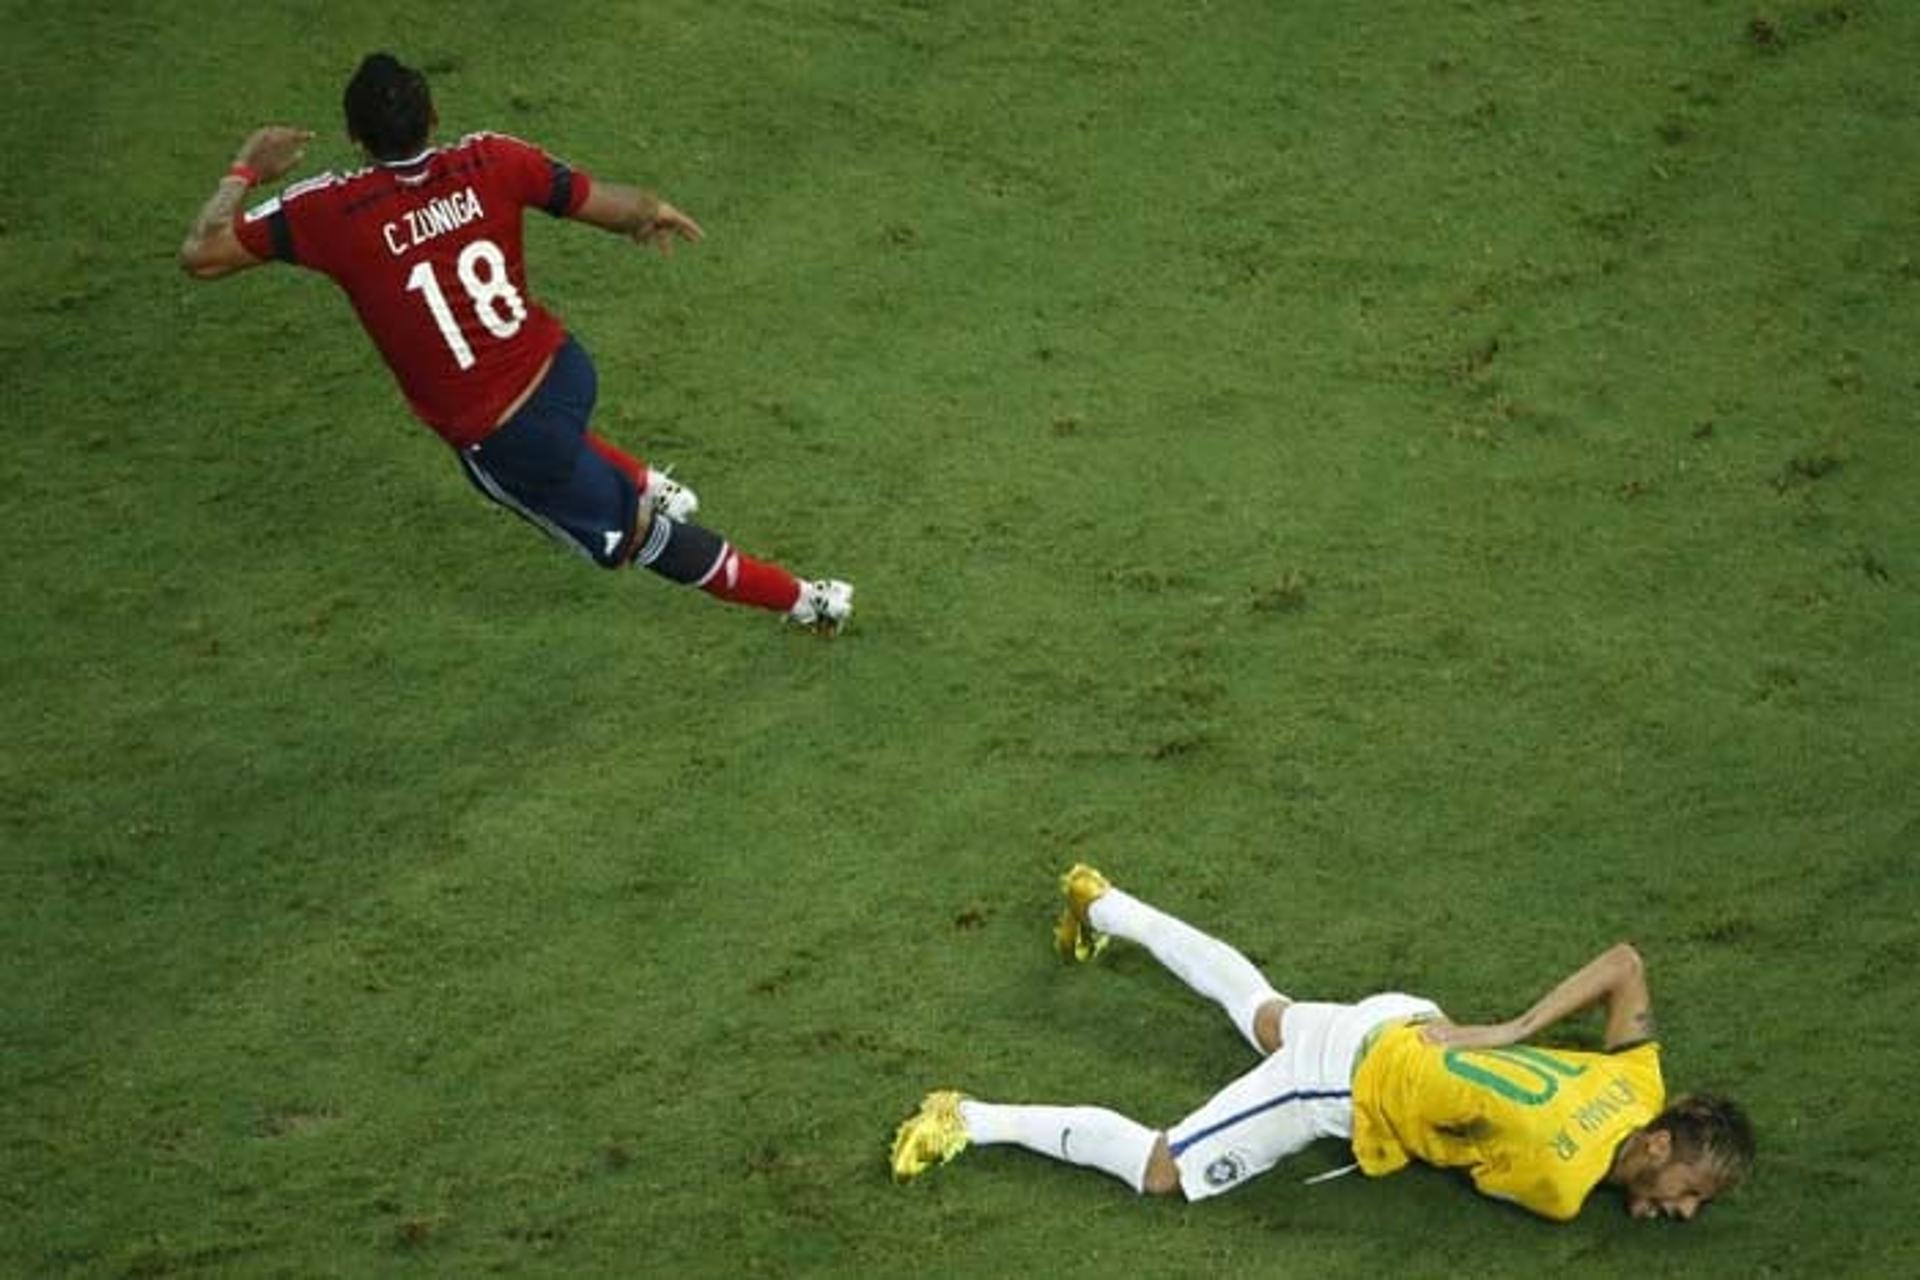 Na Copa de 2014 o Brasil eliminou a Colômbia ganhando por 2 a 1 nas quartas de final. Porém, o lateral-direito Juan Camilo Zúñiga se tornou neste jogo um dos maiores vilões ao tirar daquele Mundial Neymar com uma criminosa entrada.